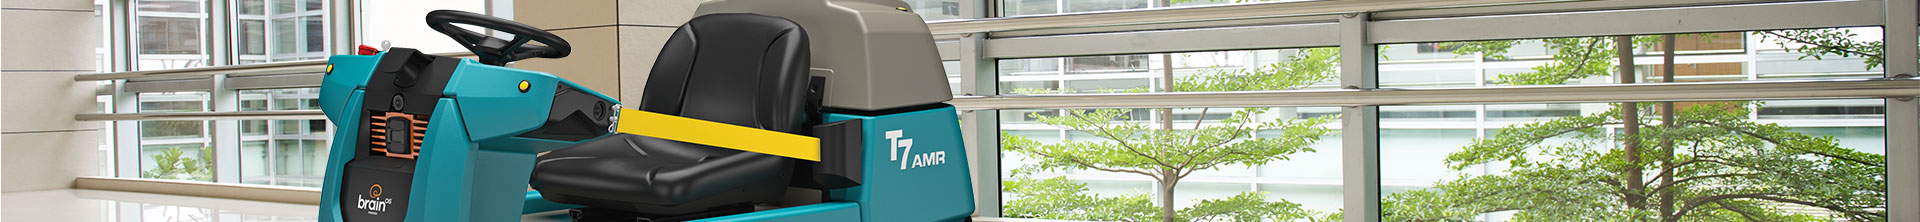 Autolaveuse robot T7AMR nettoyant un hôpital